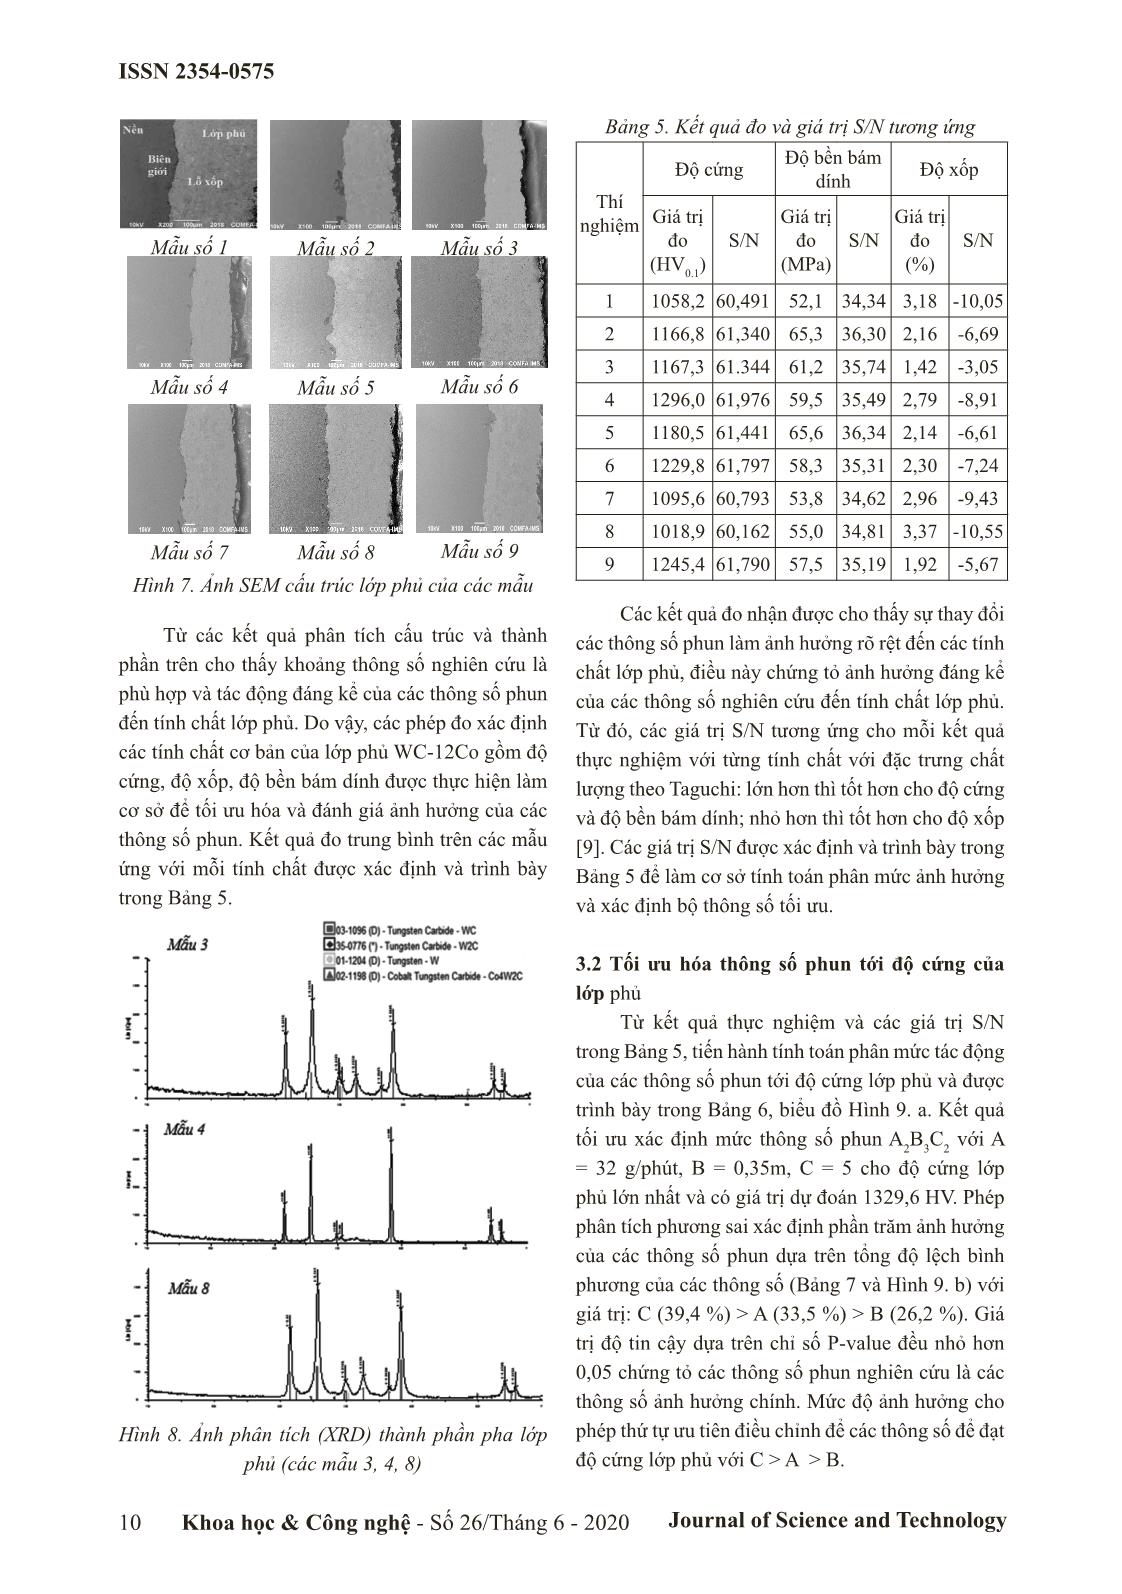 Nghiên cứu ảnh hưởng của lưu lượng phun, khoảng cách phun, tỷ lệ oxy/ propan đến độ cứng, độ bền bám dính và độ xốp của lớp phủ WC-12CO bằng phun HVOF trang 4